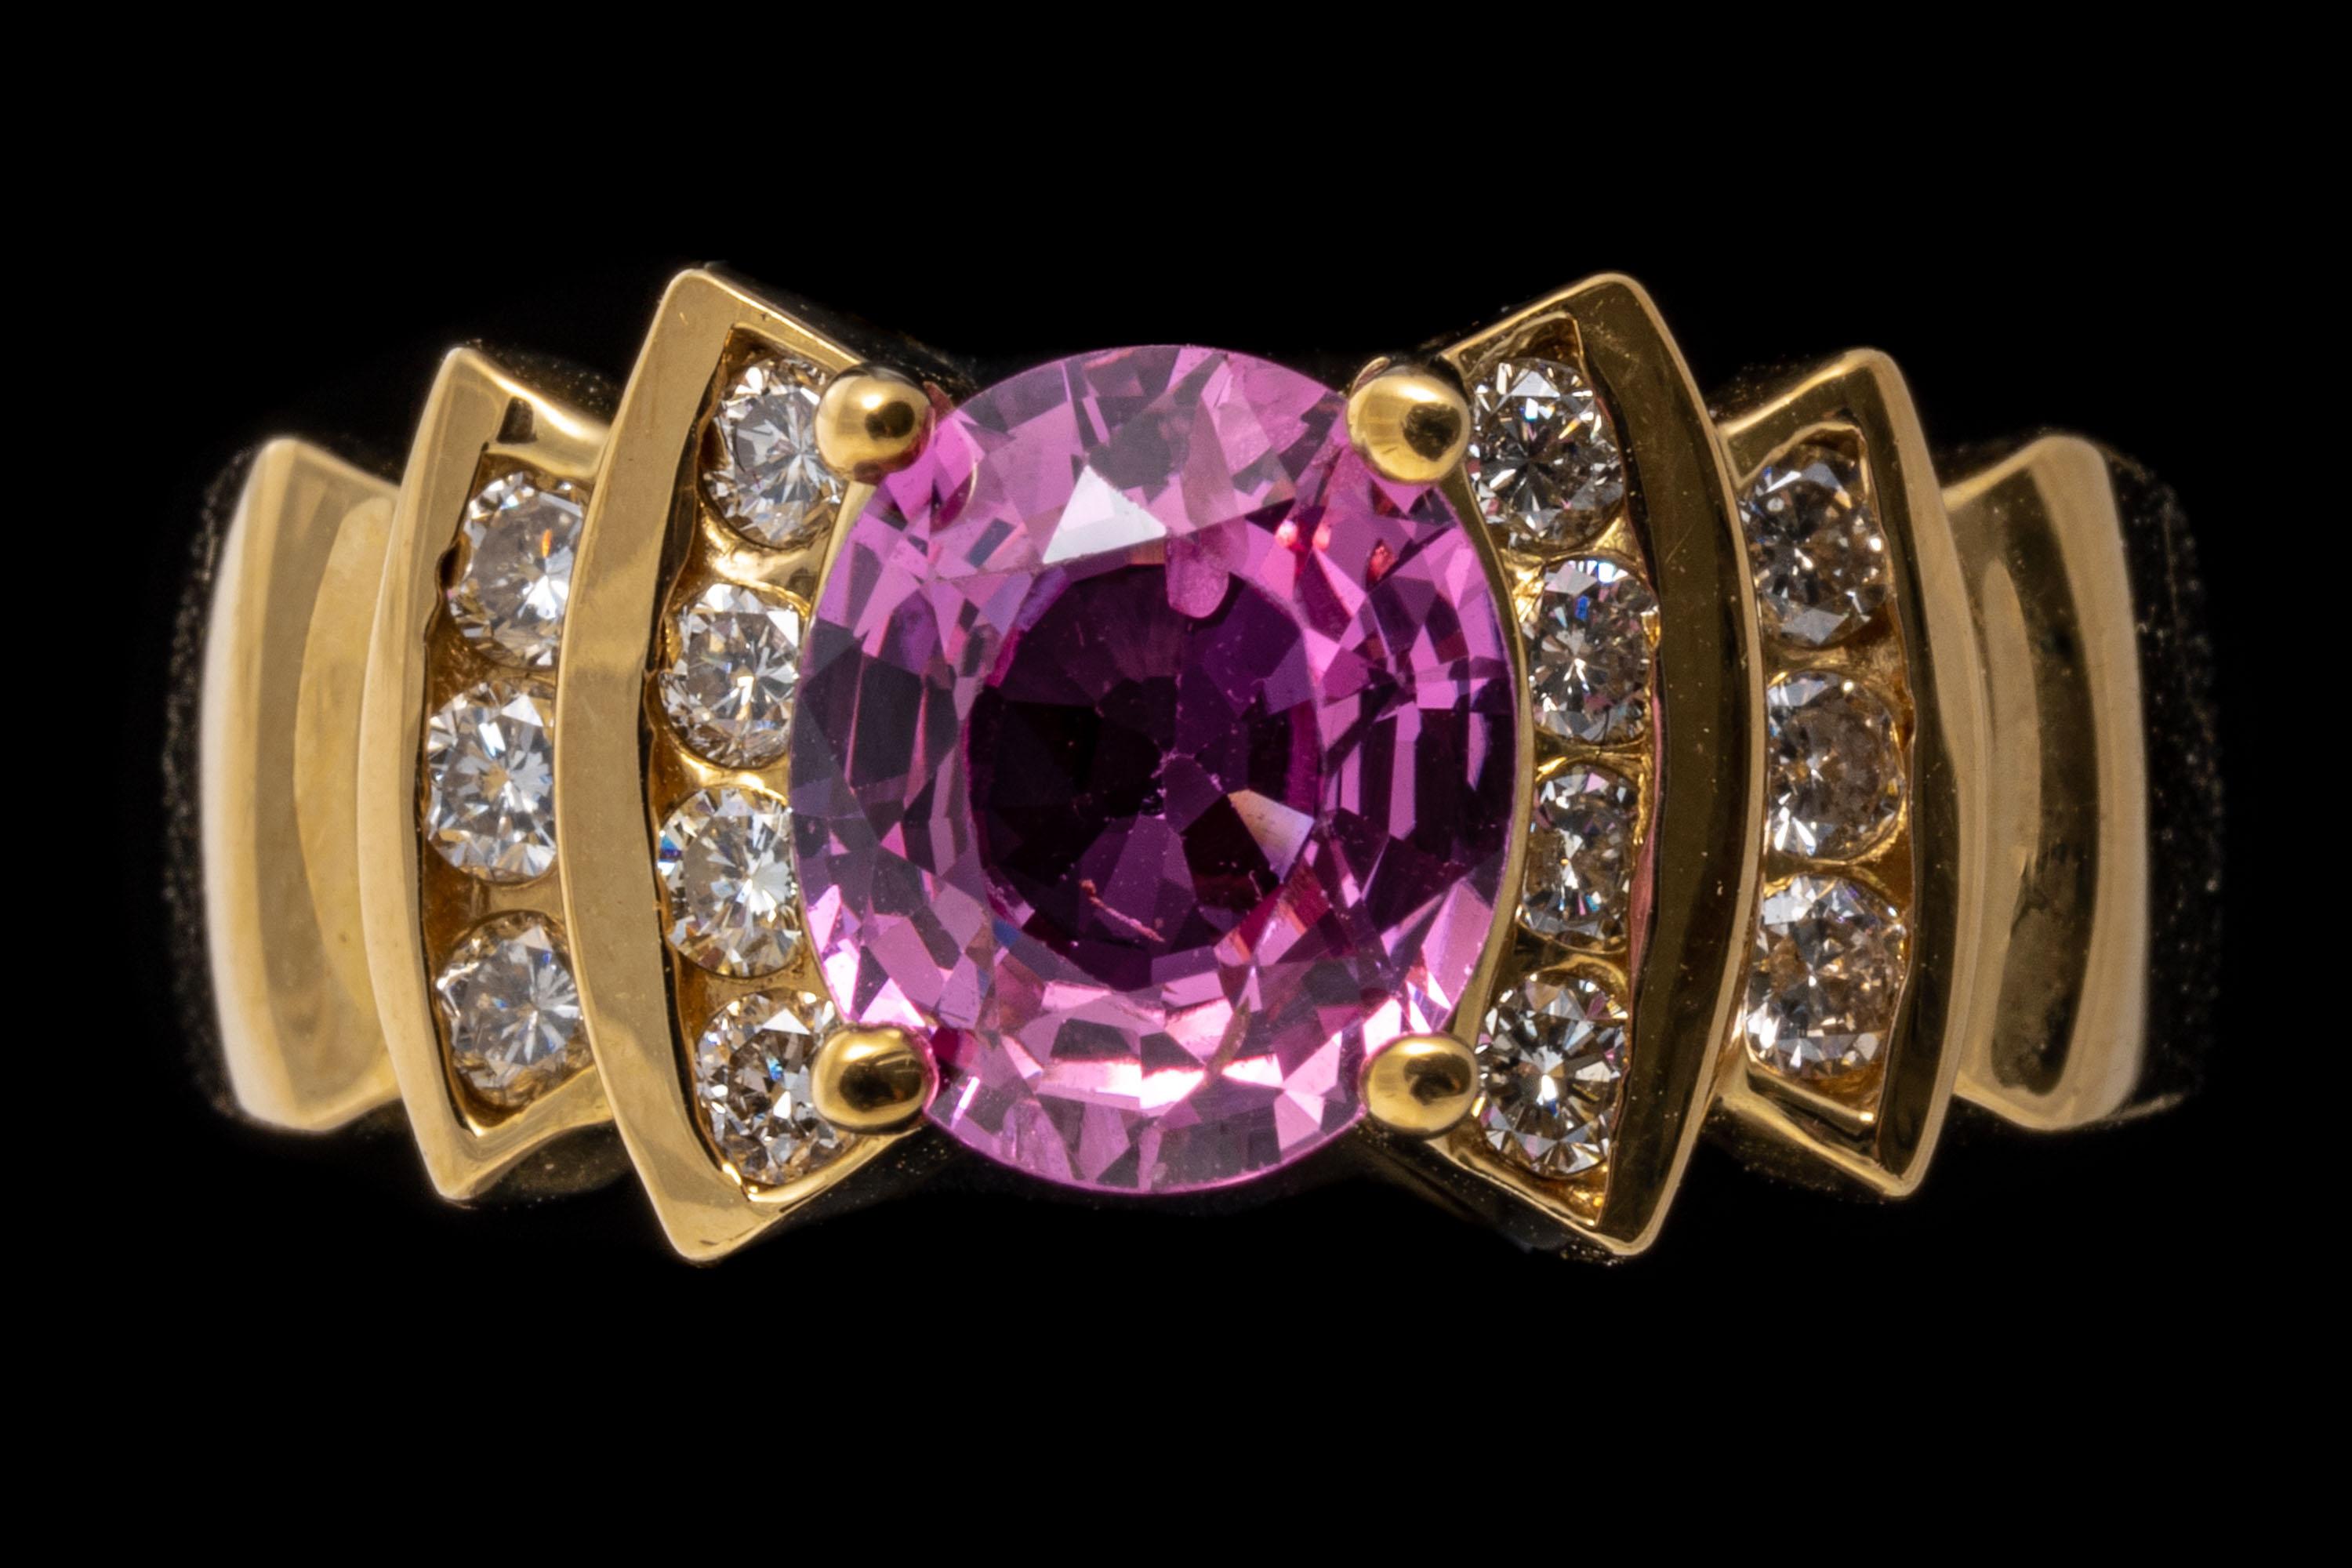 ring aus 18k Gelbgold. Diese schöne, bunte Ring verfügt über eine facettierte ovale Form, tief rosa Farbe rosa Saphir Mittelstein, etwa 1,43 CTS und Zacken gesetzt. Flankiert wird der Stein von geschwungenen, abgestuften Seiten, die mit runden